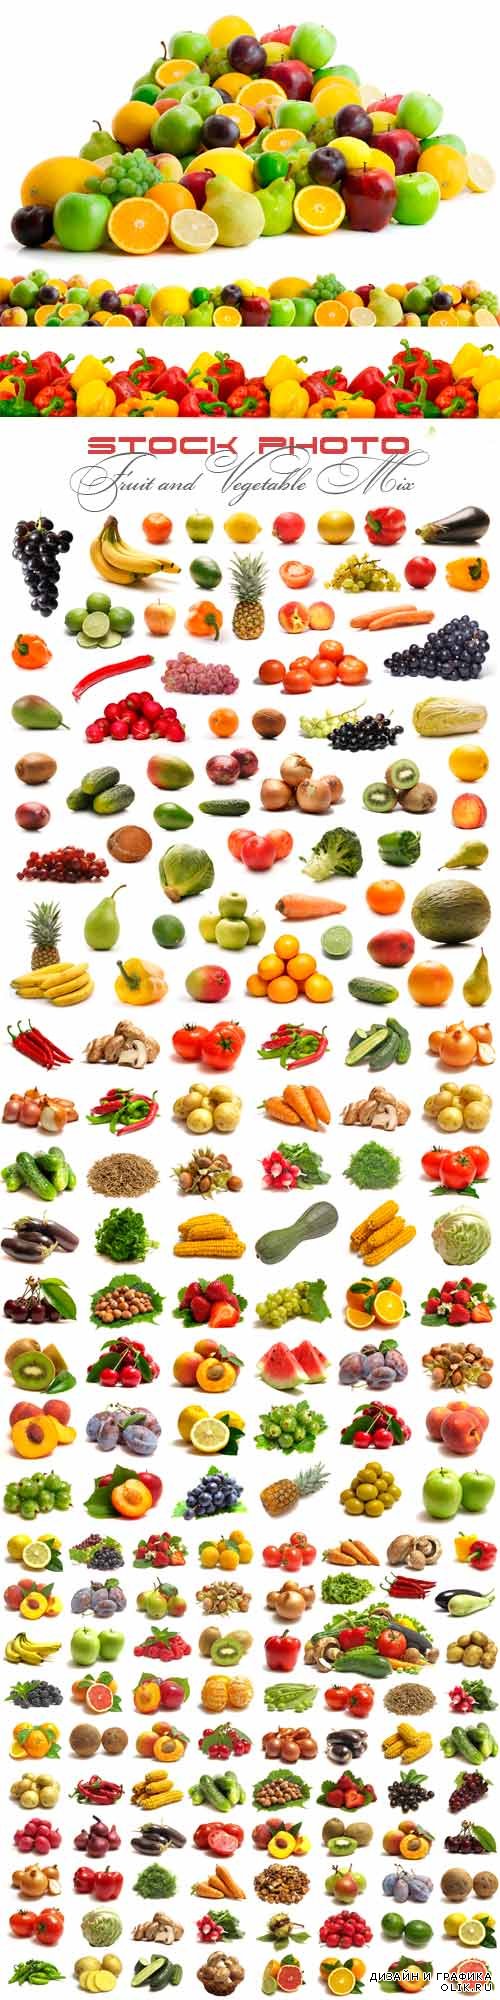 Сочный фруктово овощной микс